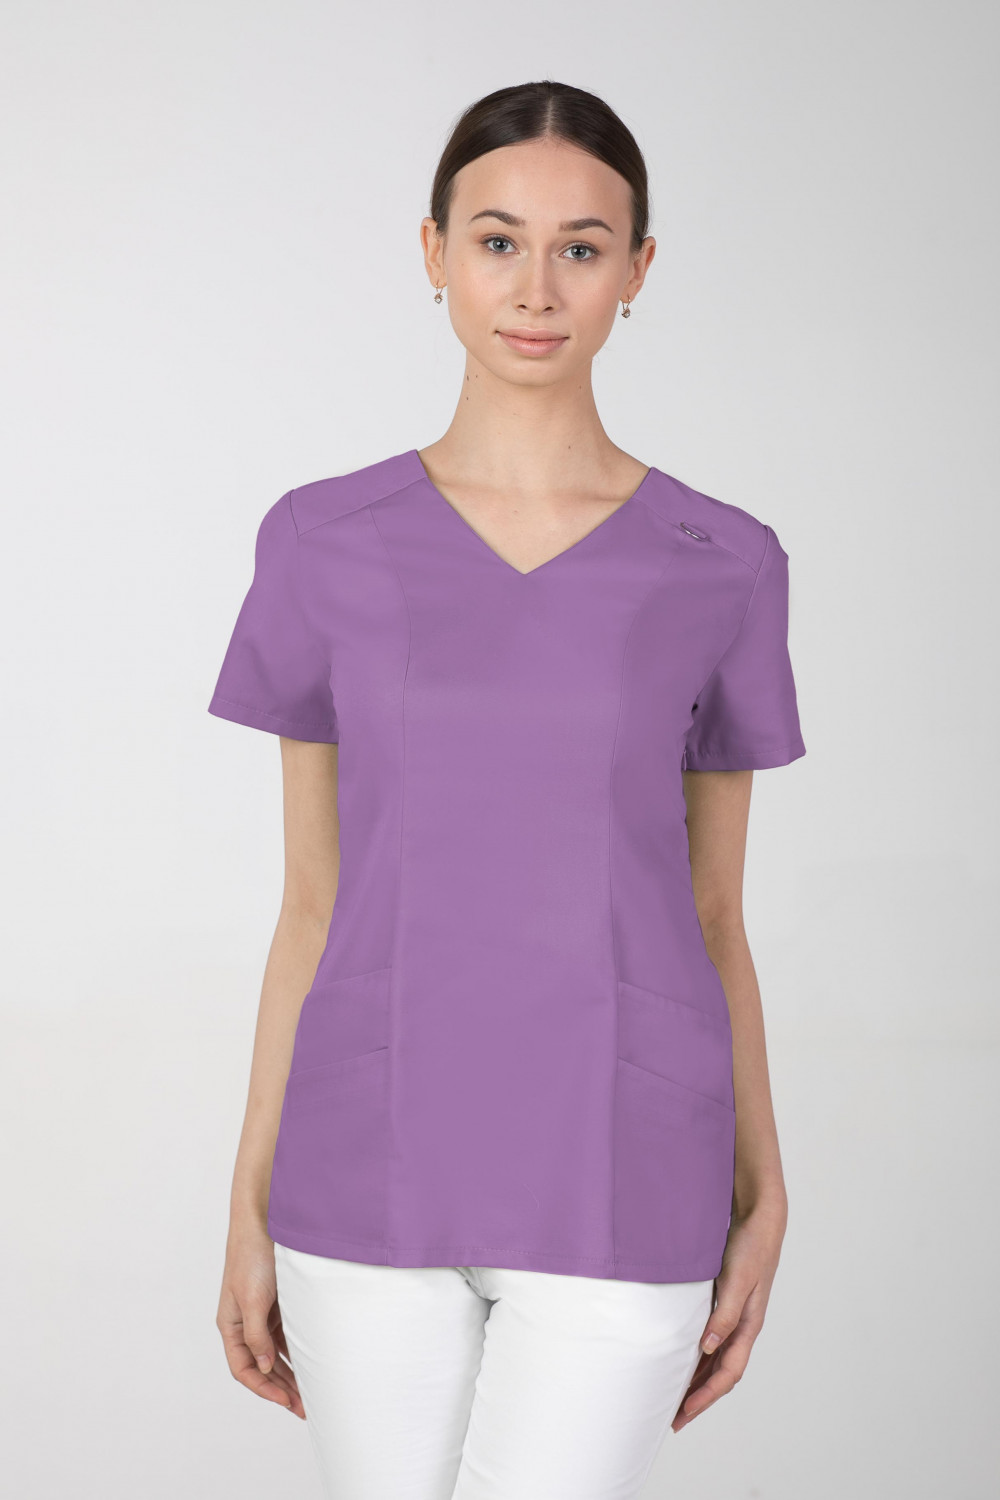 Bluza medyczna damska M-376A 26 kolorów. Jagoda